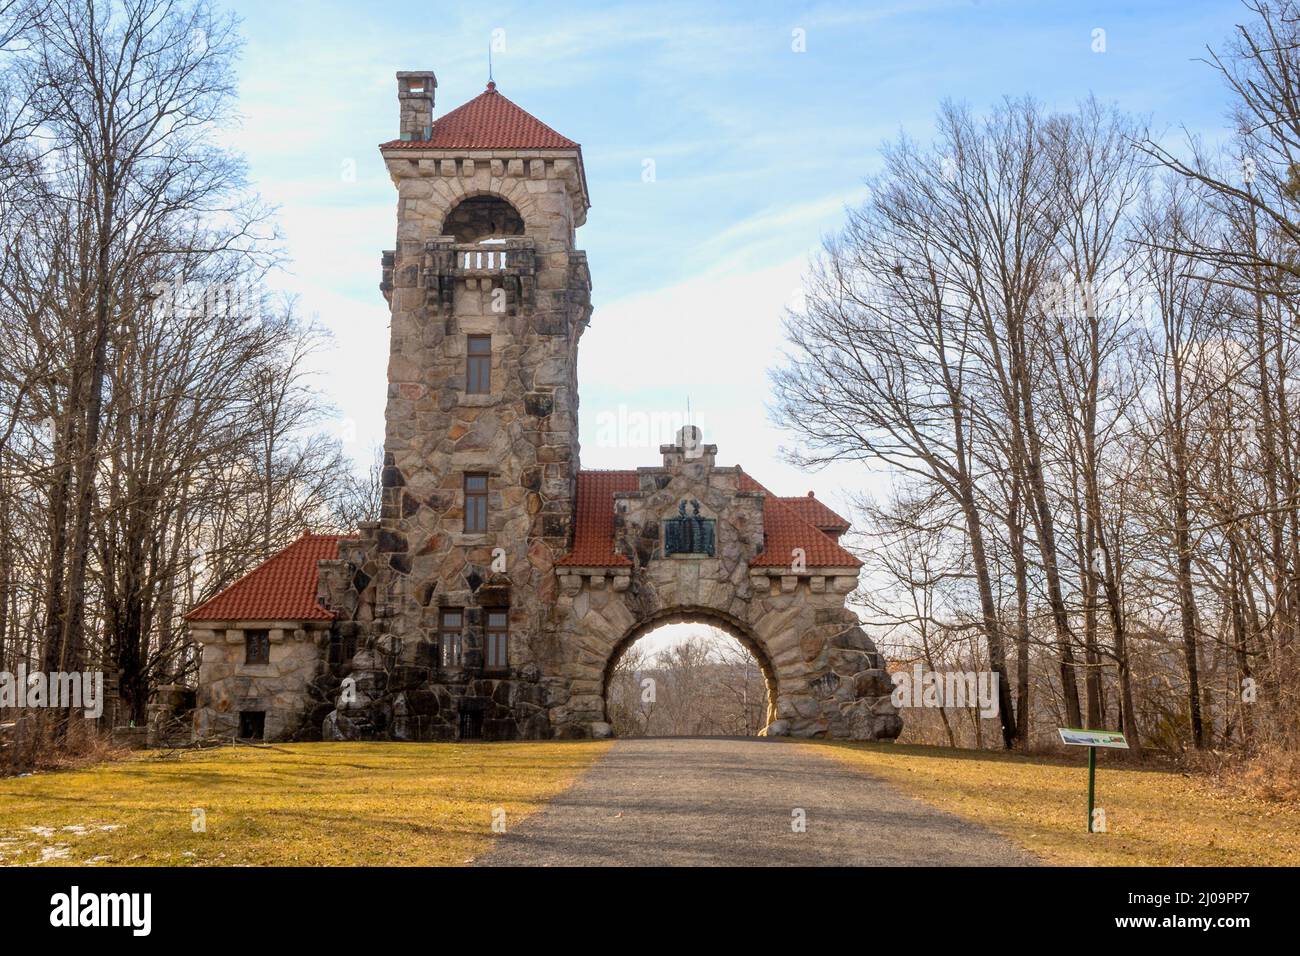 New Paltz, NY - USA - Mar 15, 2022: Vista panoramica dello storico Mohonk testimonial Gateway. La casa di controllo in pietra fu costruita nel 1908 ed era il entra Foto Stock